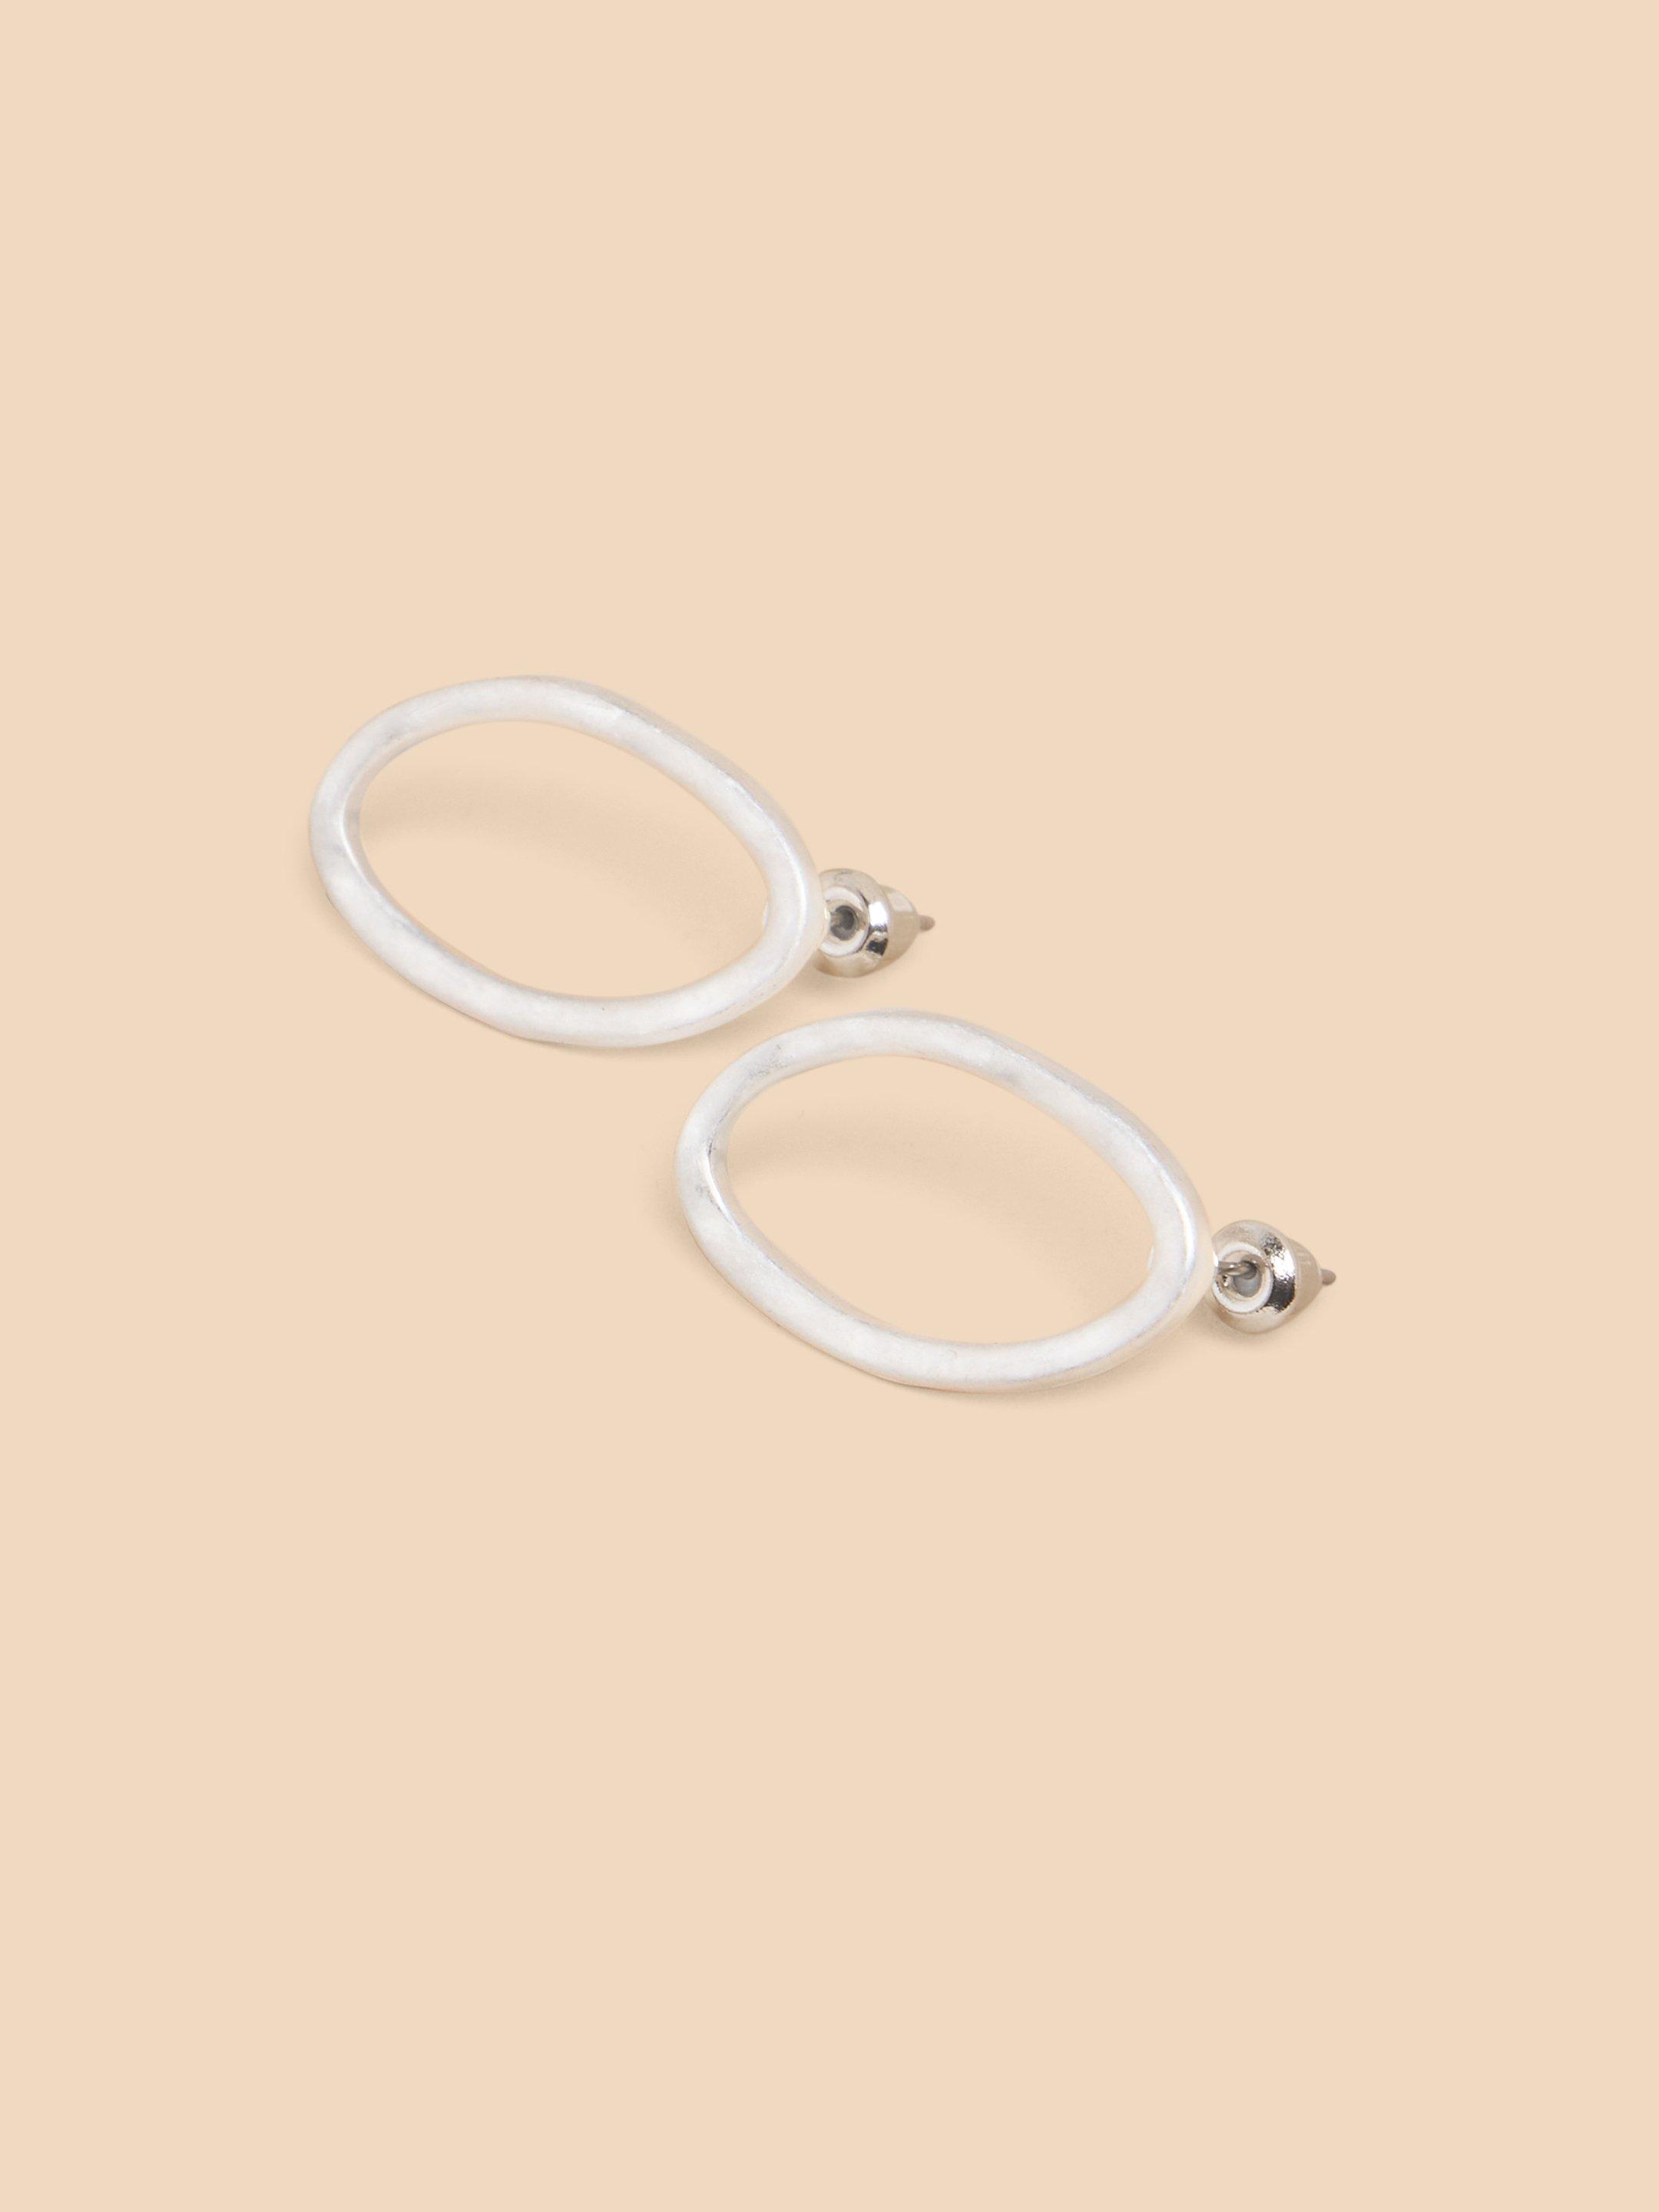 Oval Hammered Earrings in SLV TN MET - FLAT DETAIL